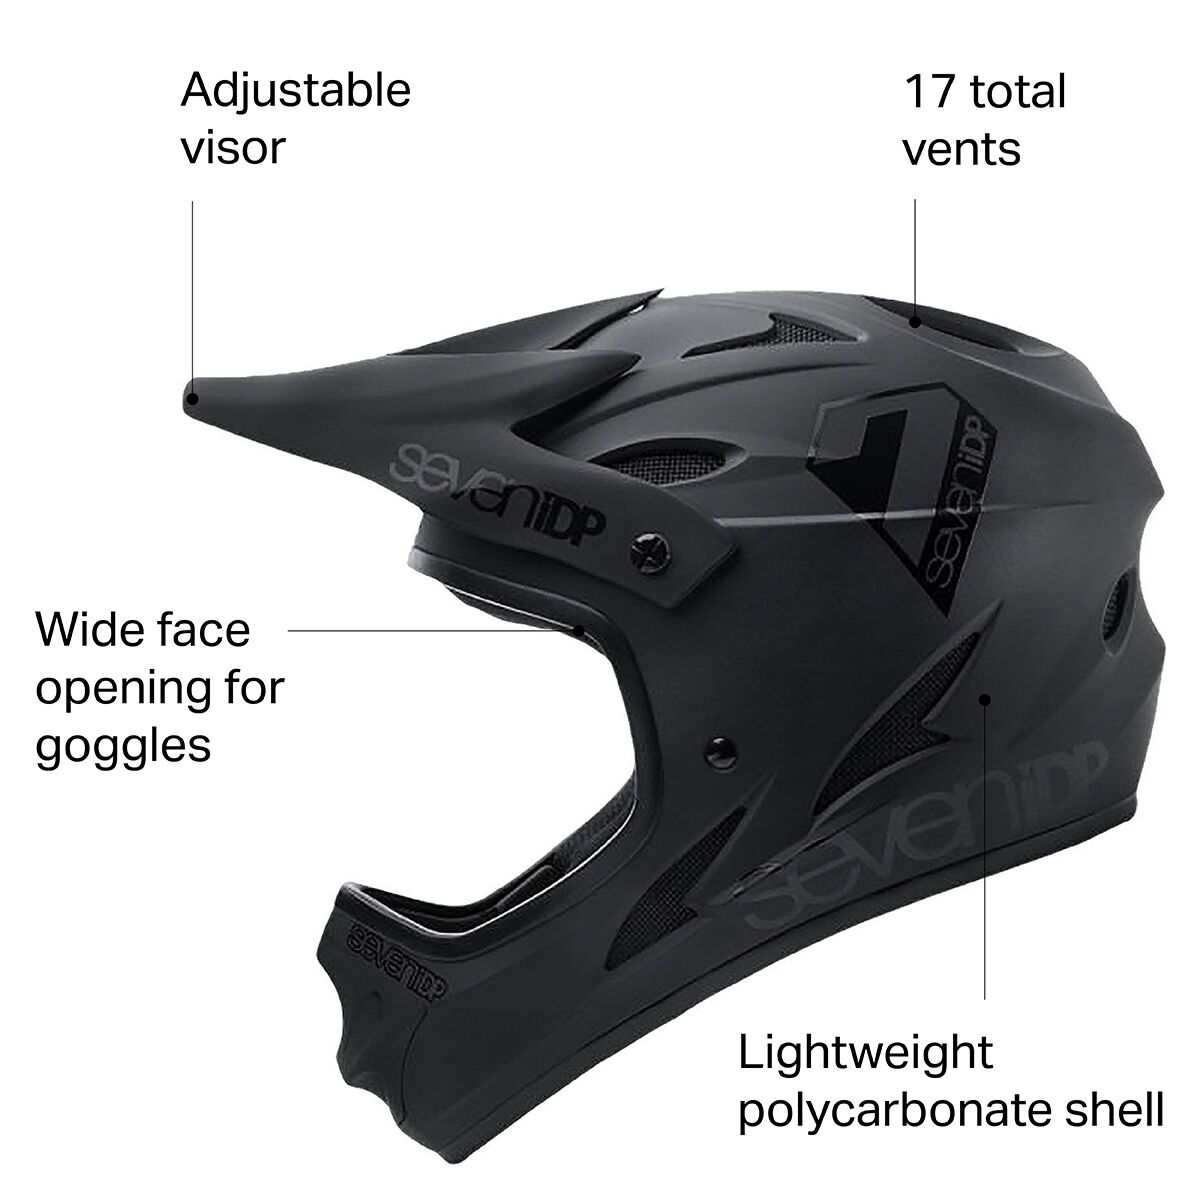 7 Защитный шлем M1 7 Protection